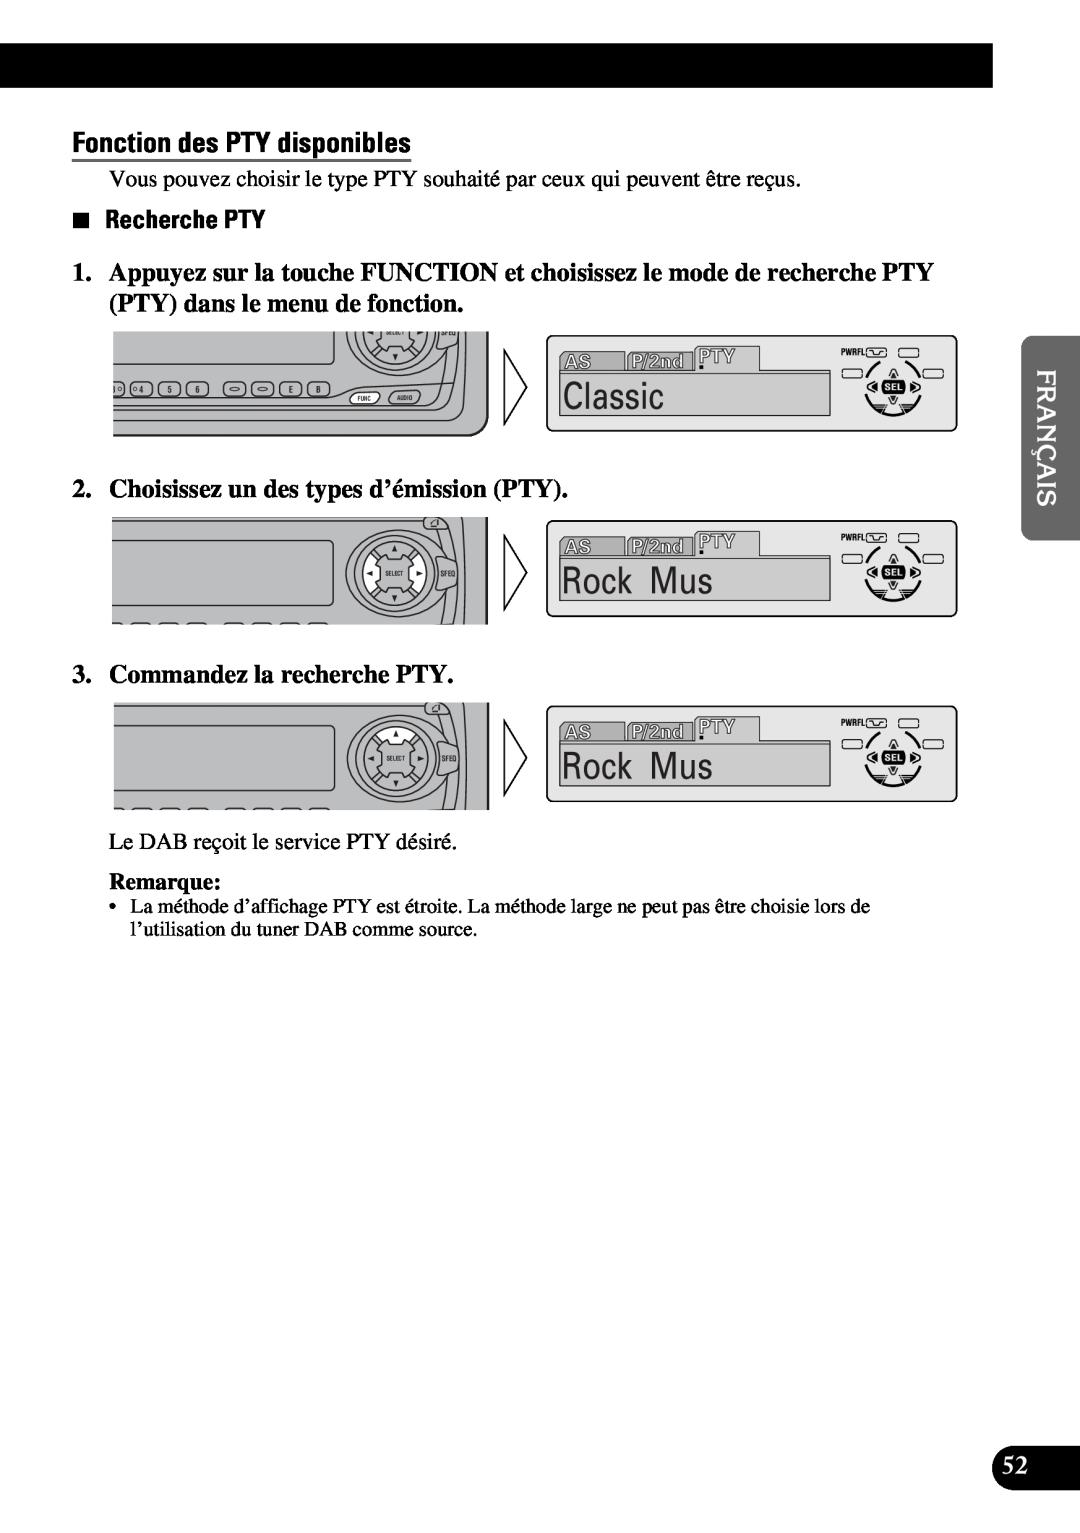 Pioneer DEH-P6300 Fonction des PTY disponibles, Recherche PTY, Choisissez un des types d’émission PTY, Remarque, Funcaudio 